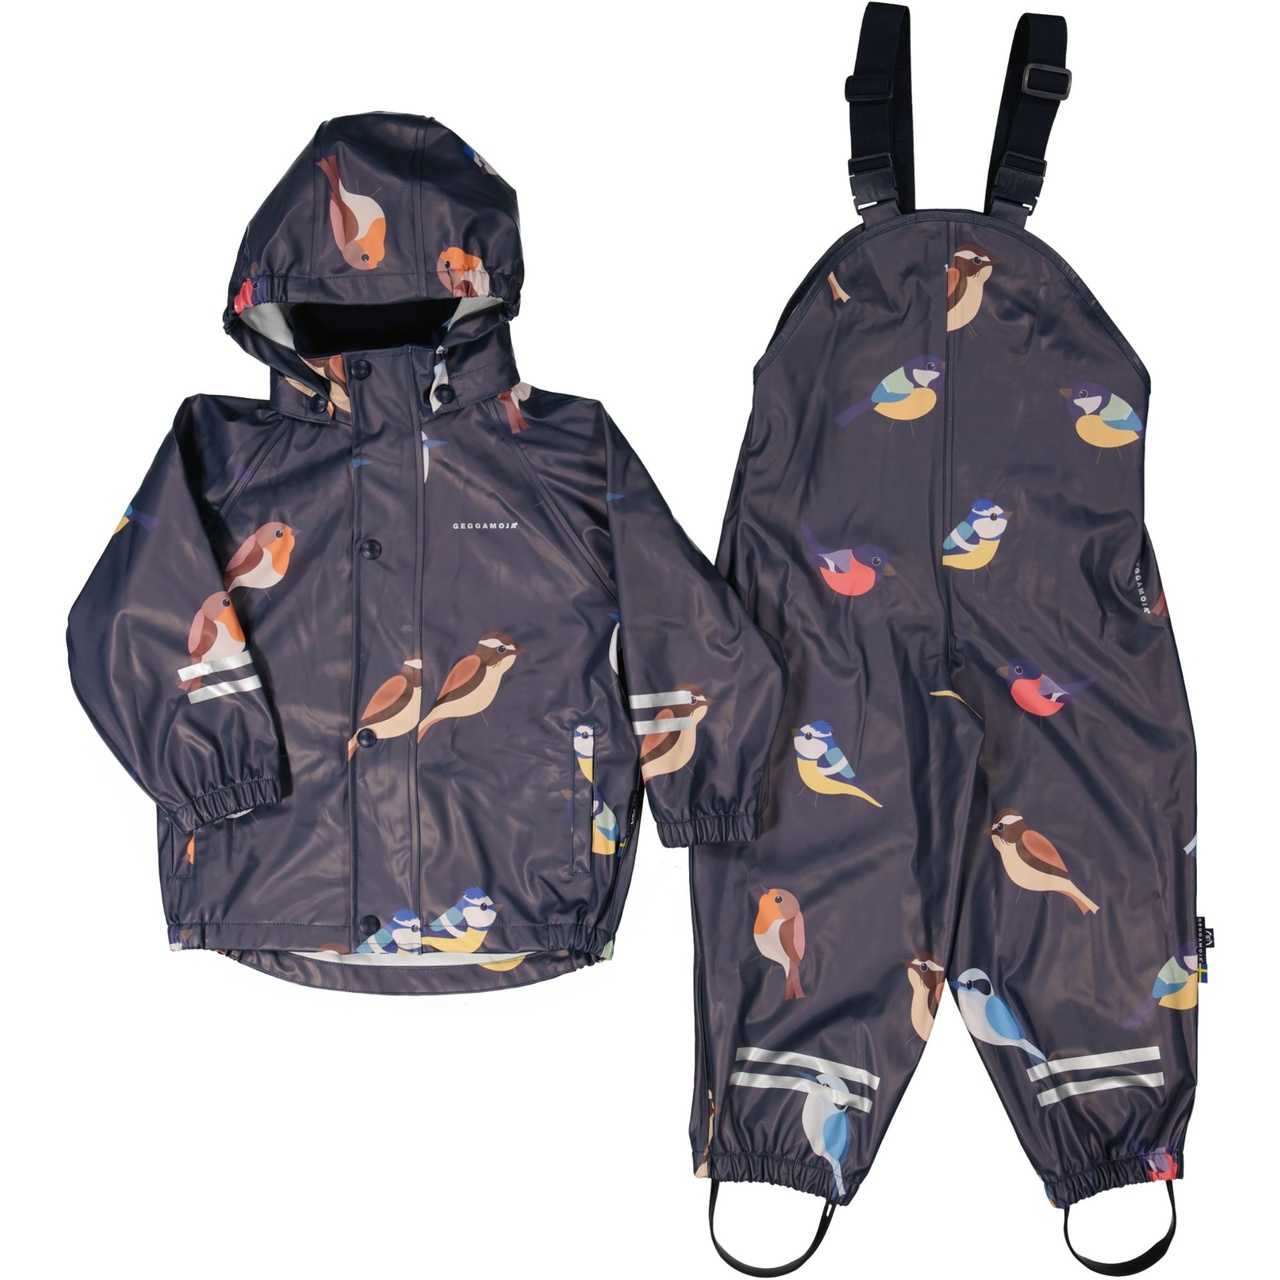 Regenbekleidung ungefüttert Birds Navy 86/92